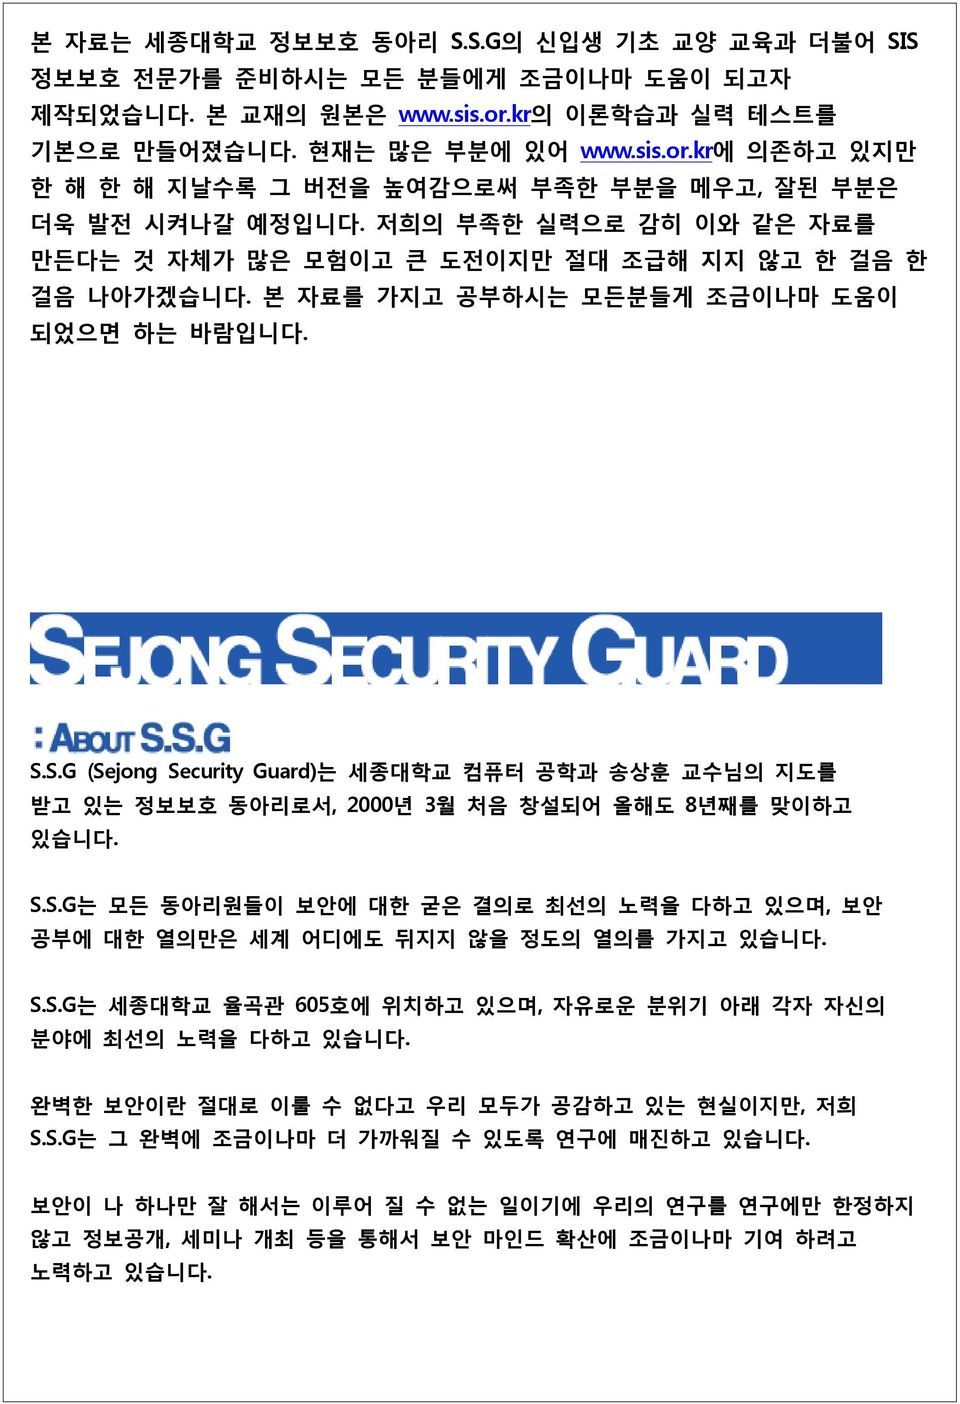 S.G (Sejong Security Guard)는 세종대학교 컴퓨터 공학과 송상훈 교수님의 지도를 받고 있는 정보보호 동아리로서, 2000년 3월 처음 창설되어 올해도 8년째를 맞이하고 있습니다. S.S.G는 모든 동아리원들이 보안에 대한 굳은 결의로 최선의 노력을 다하고 있으며, 보안 공부에 대한 열의만은 세계 어디에도 뒤지지 않을 정도의 열의를 가지고 있습니다.